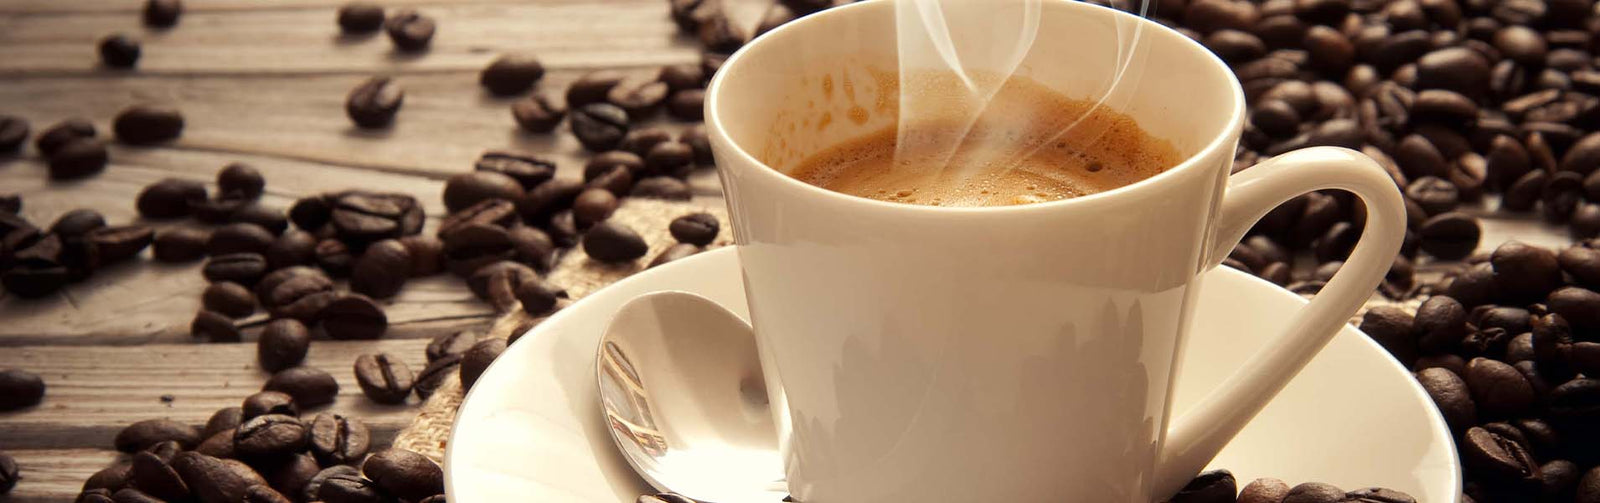 Café Despertar 10 cápsulas compatibles con Dolce Gusto®